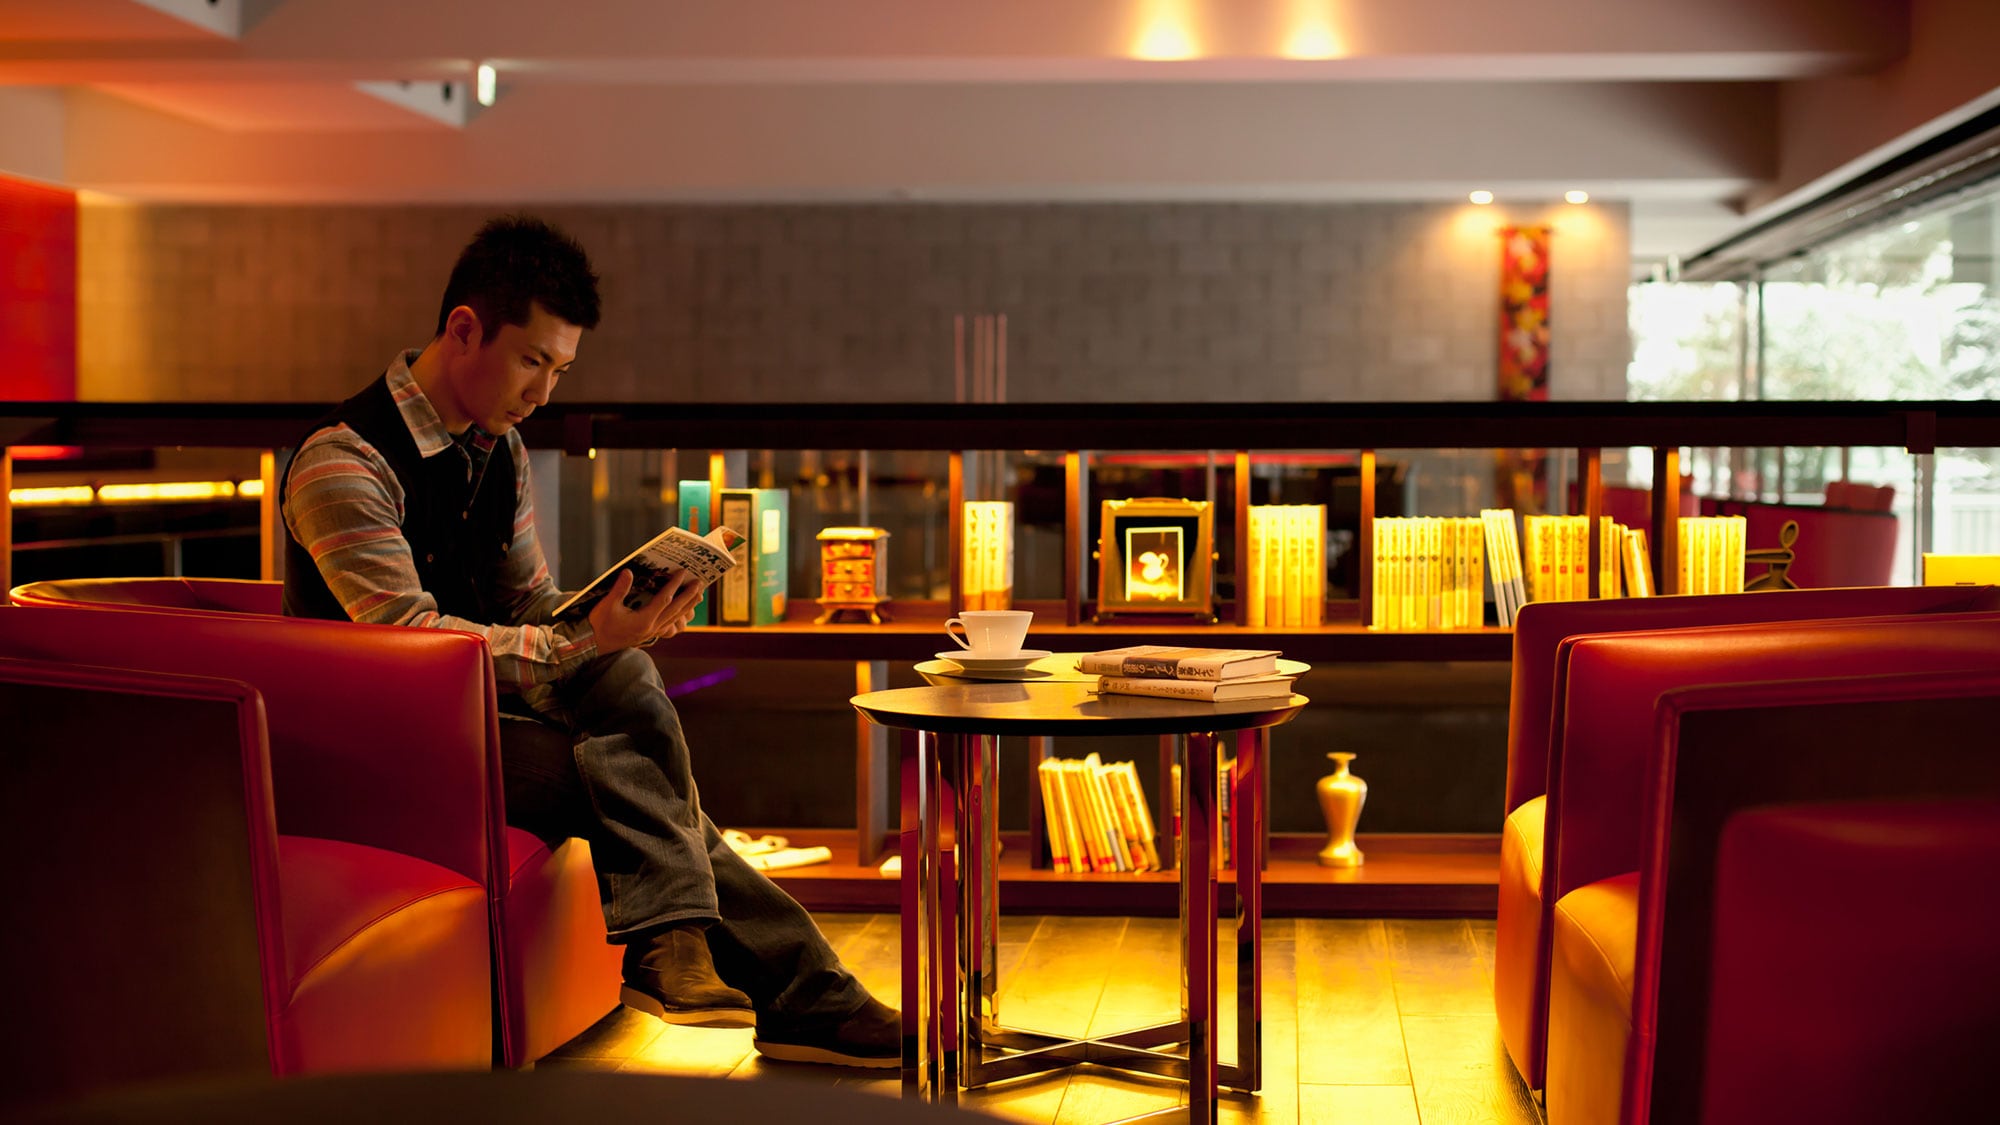 [Noguchi Bunko] Anda dapat dengan bebas membaca buku favorit Anda di bar atau lounge, atau membawanya ke kamar Anda.